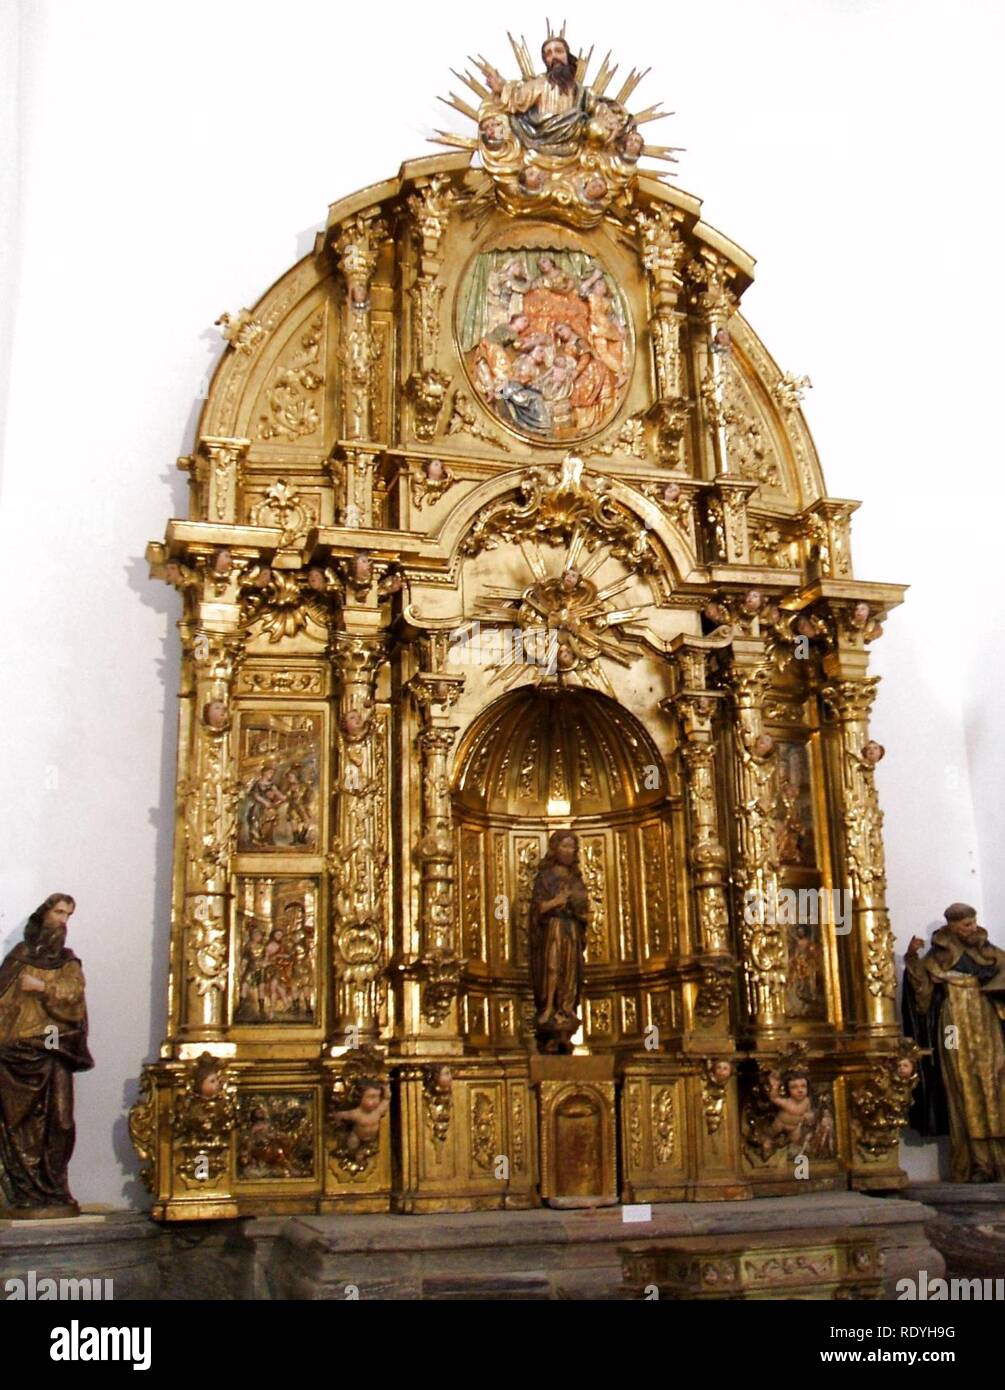 Astorga - Catedral 08 - museo catedralicio. Stock Photo